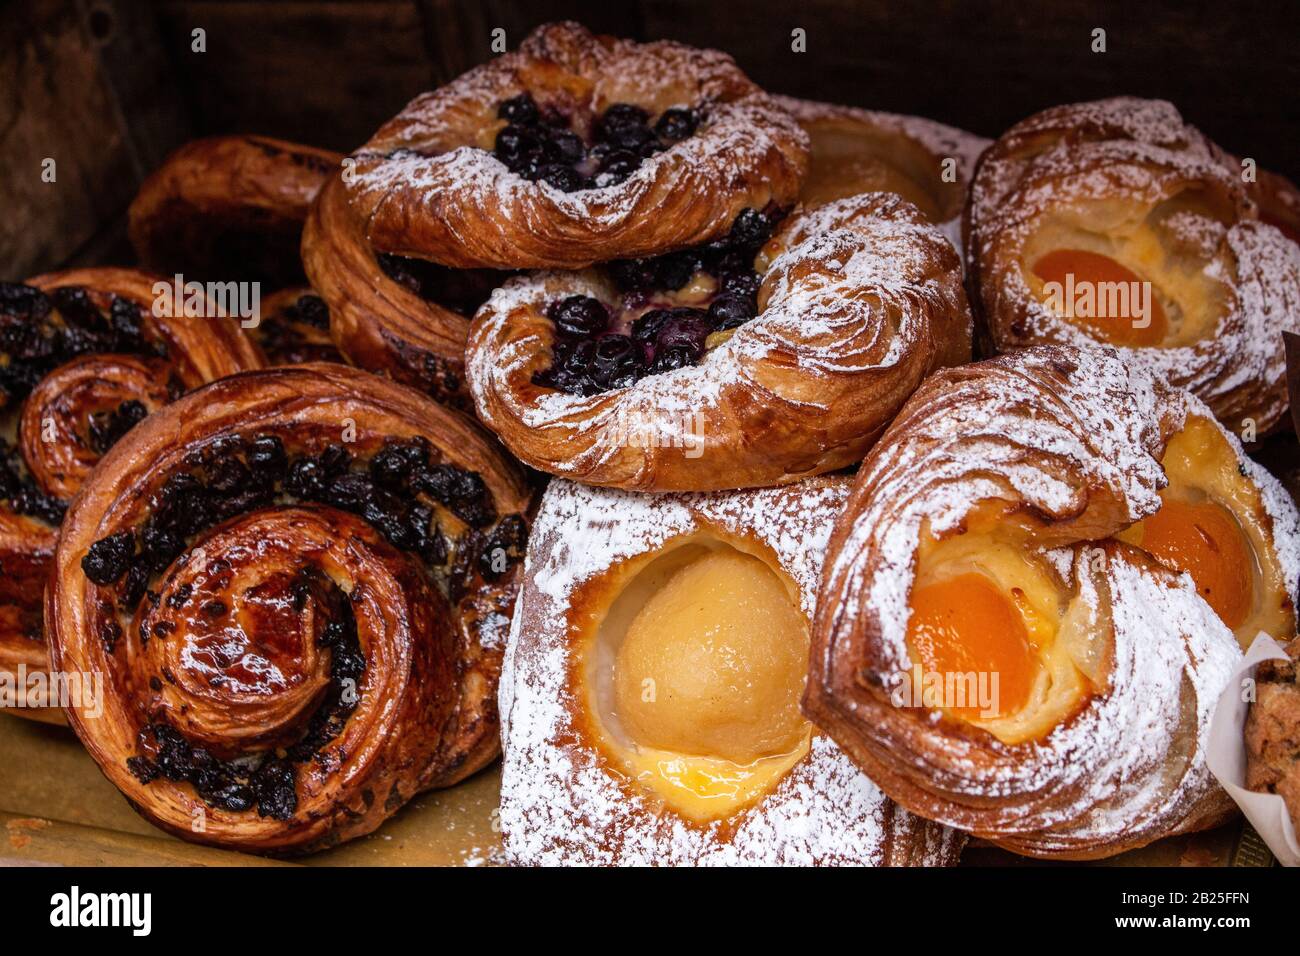 Pâtisseries danoises fraîchement cuites, crème anglaise, abricots, bleuets, raisins secs, spirales de cannelle cuites dans du sucre glace et du glacer Banque D'Images